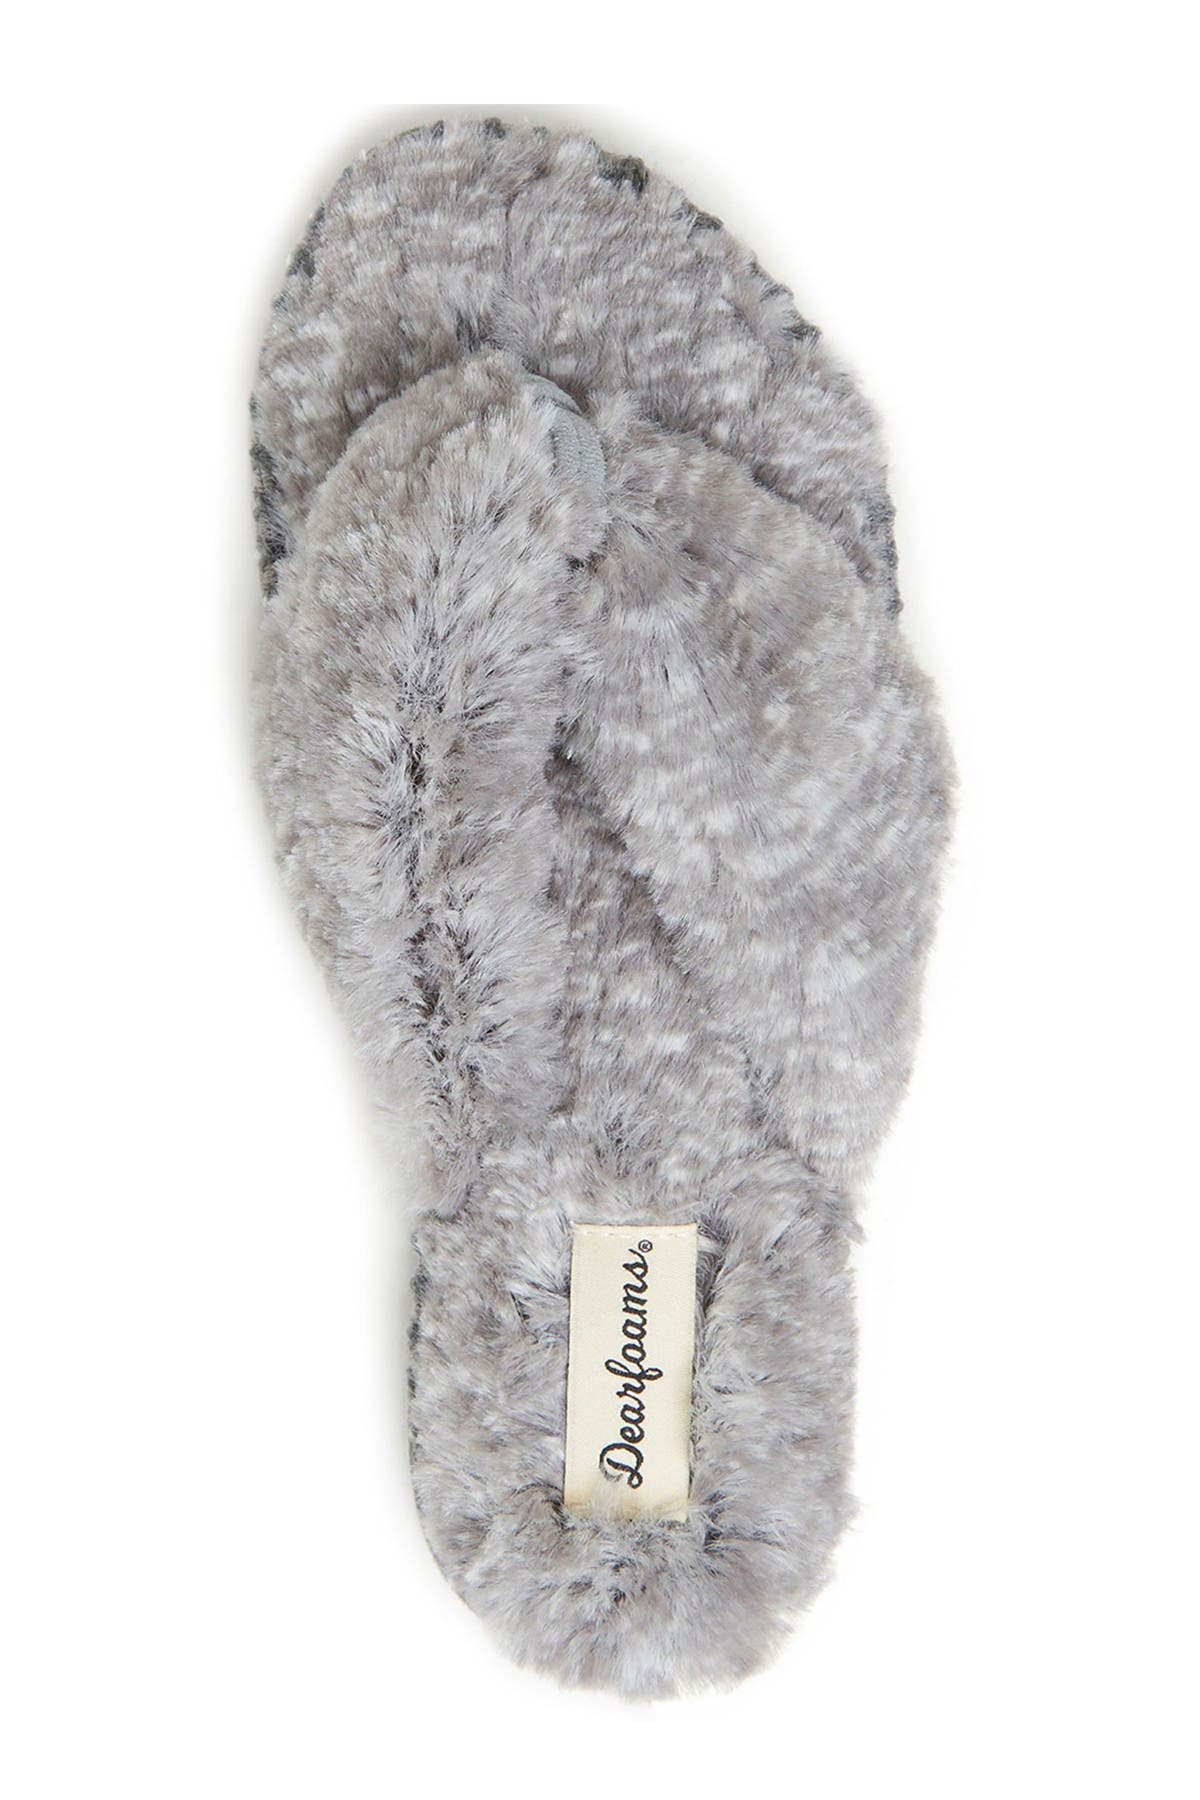 women's dearfoams faux fur thong slippers